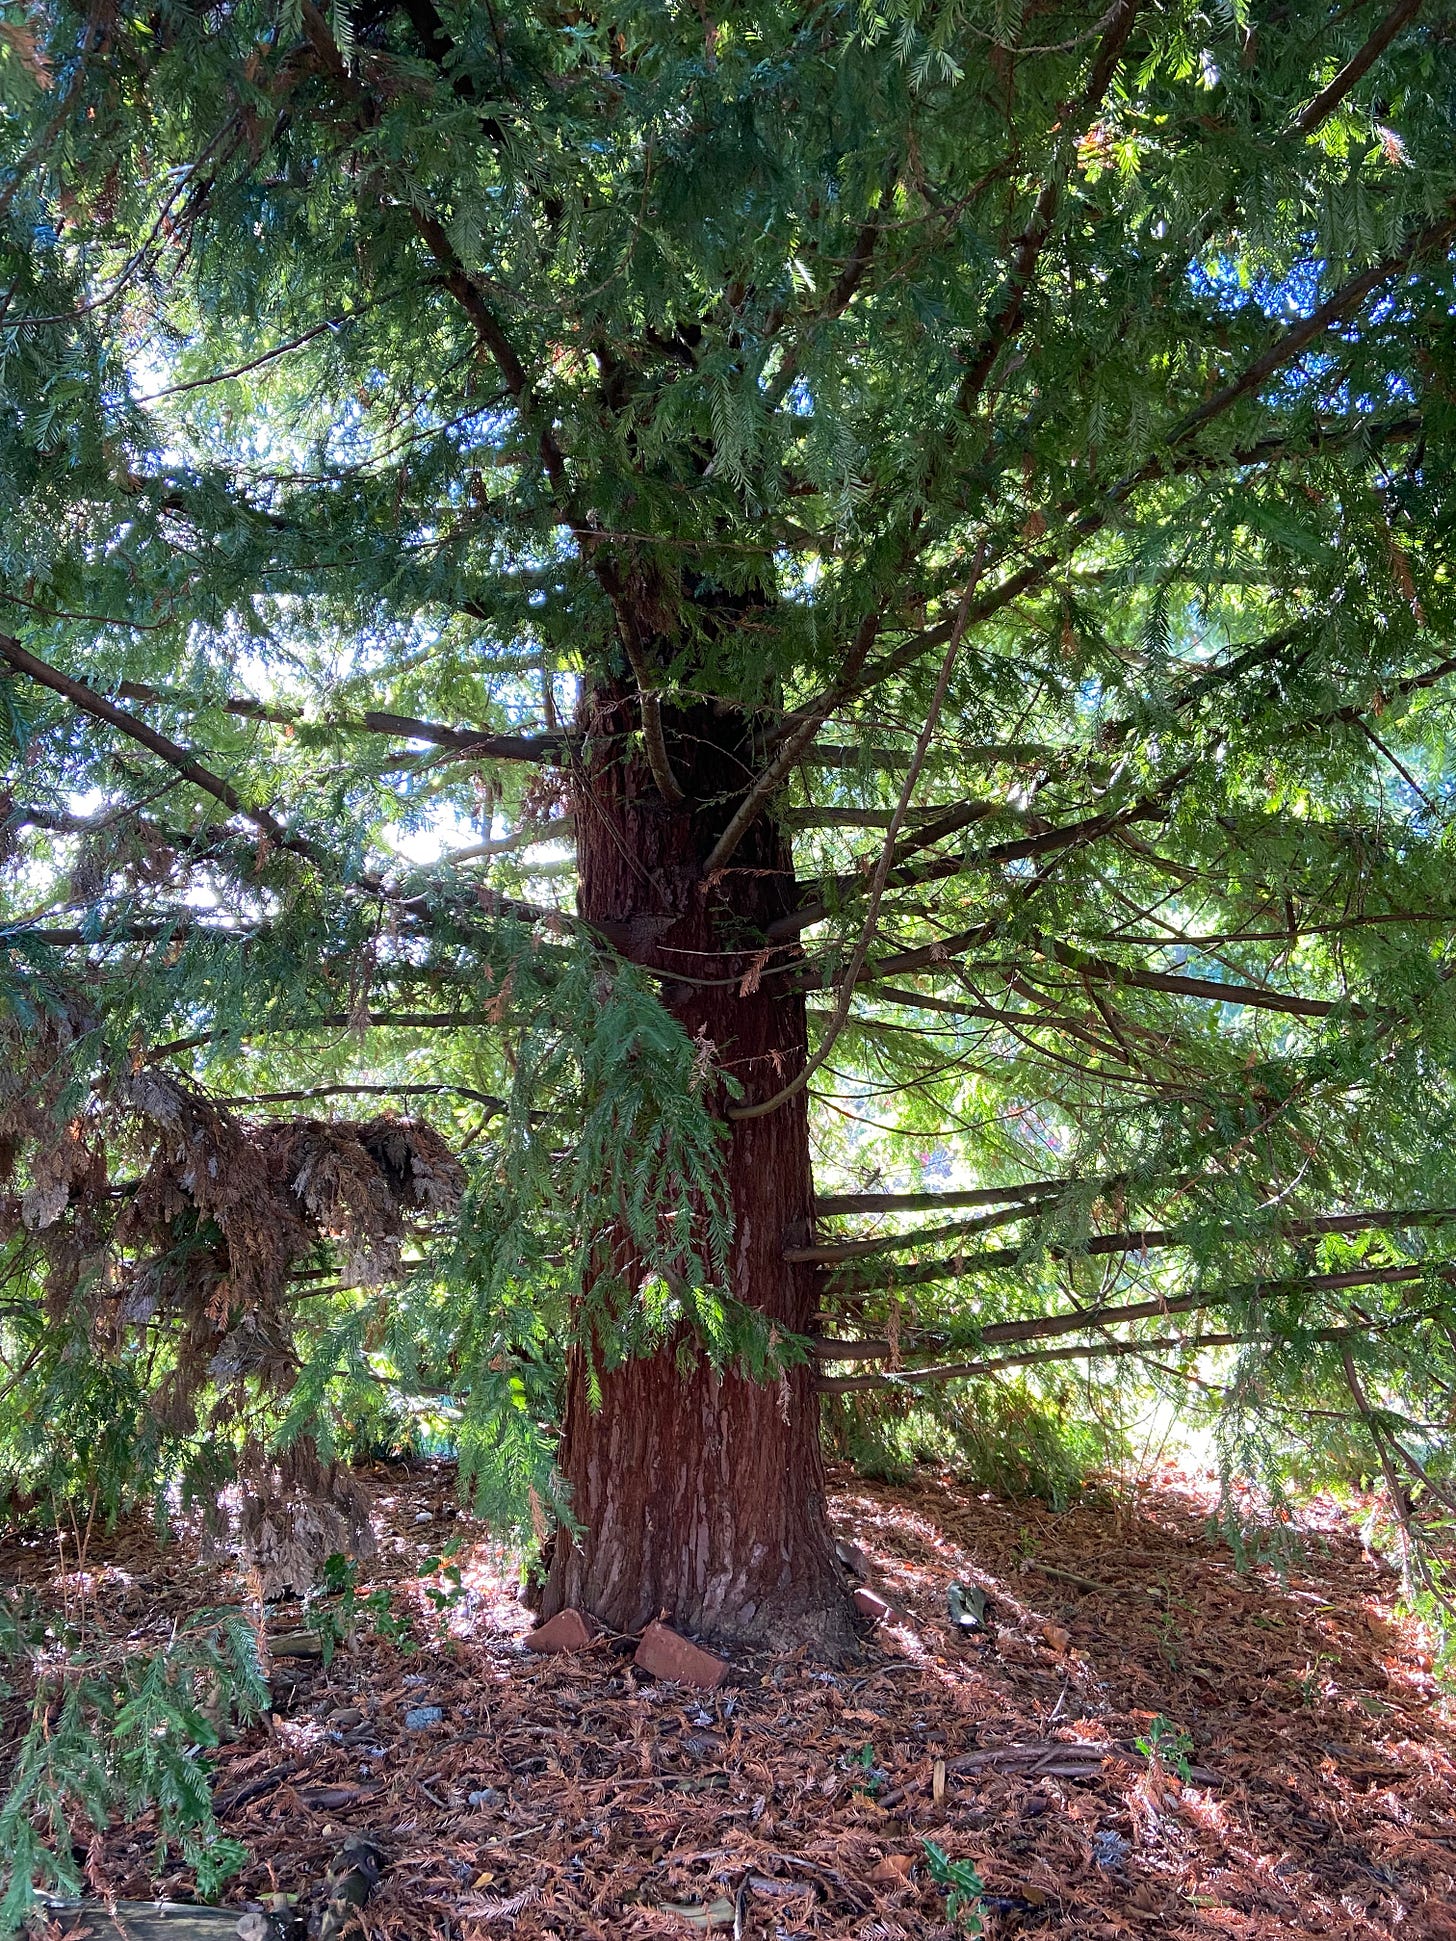 A Douglas fir, viewed from below